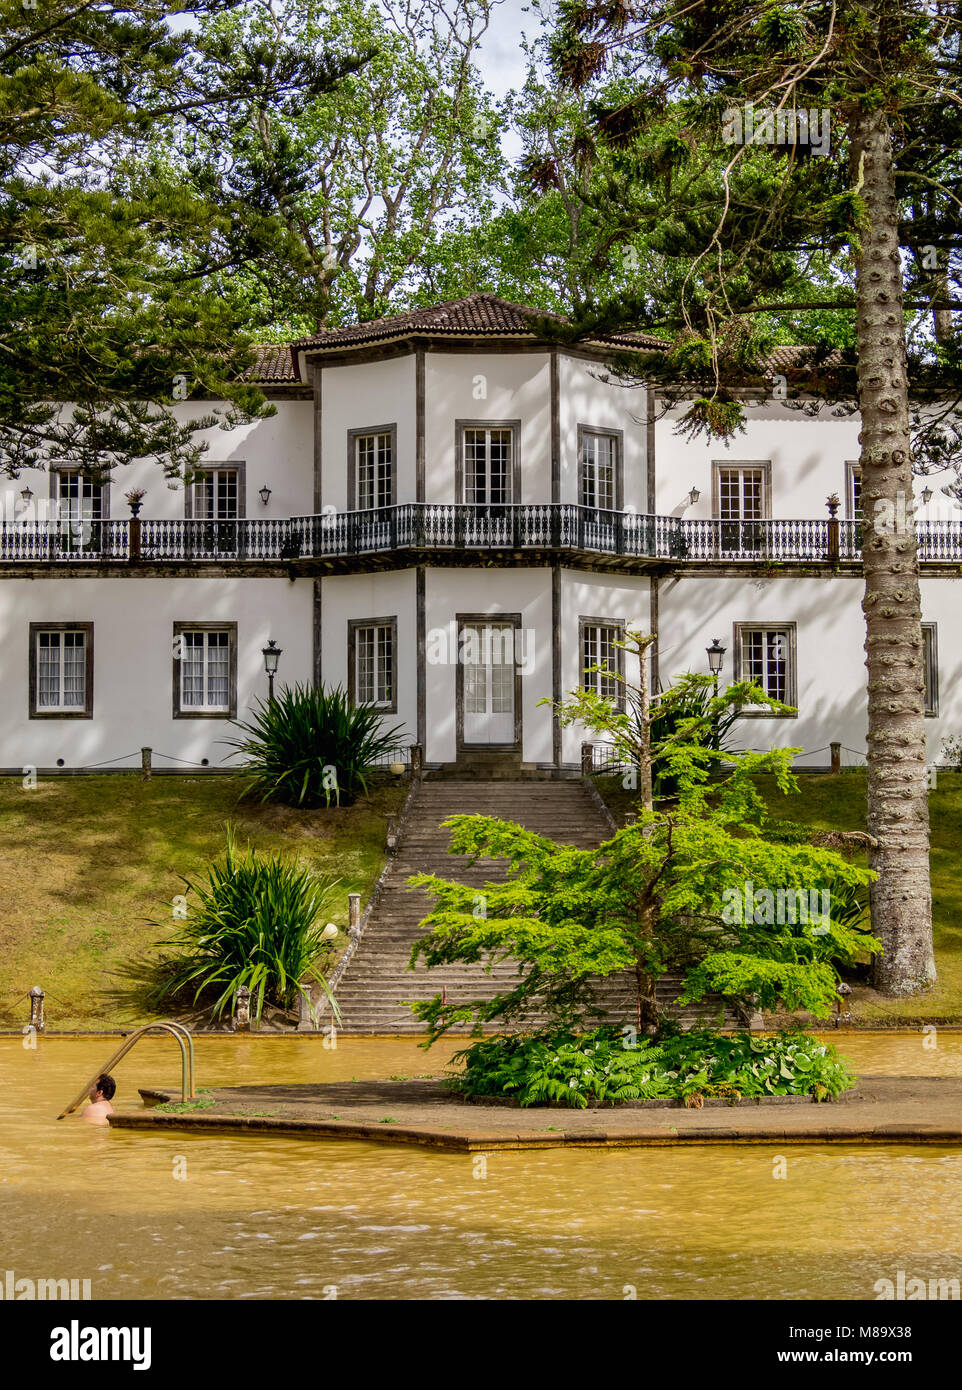 Piscine d'eau thermale et l'hôtel particulier dans le parc Terra Nostra, Furnas, île de São Miguel, Açores, Portugal Banque D'Images